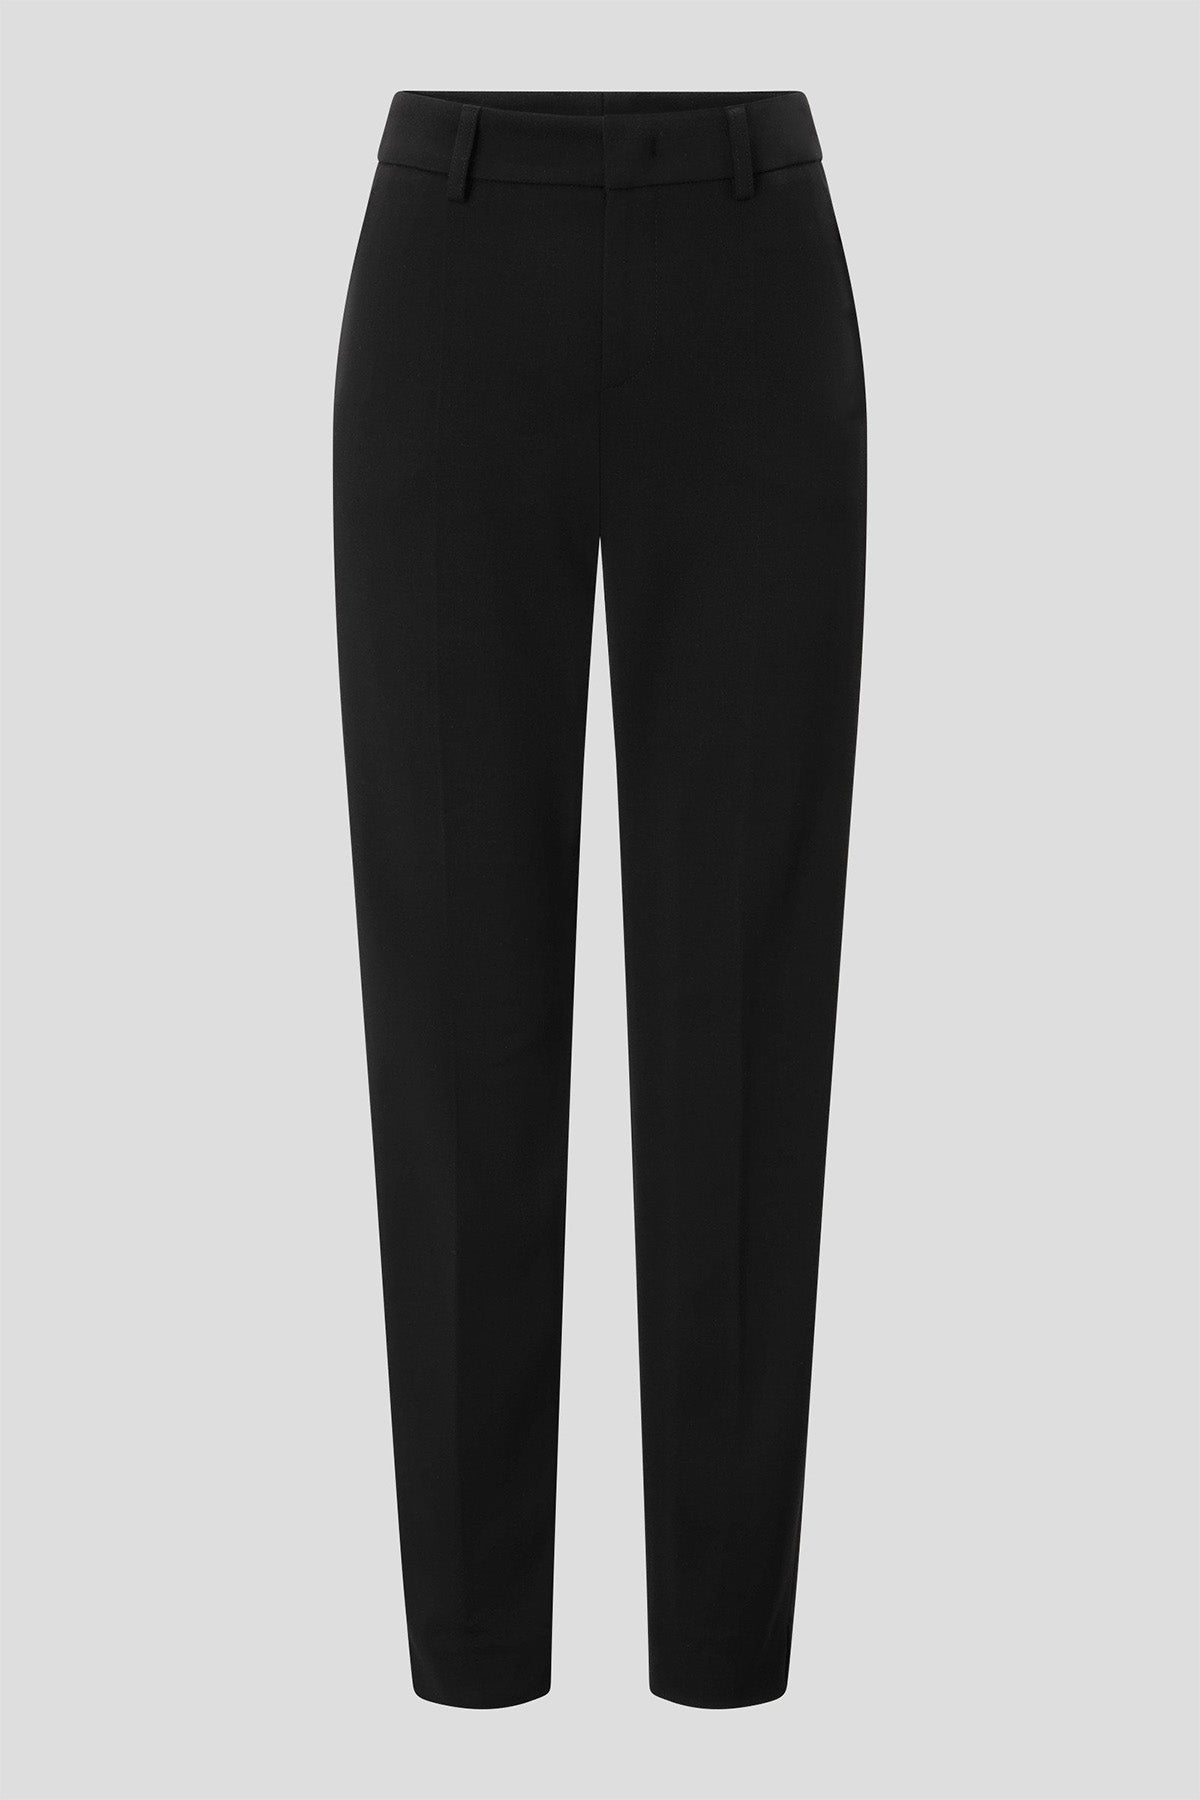 Bogner Joy Slim Fit Streç Pantolon-Libas Trendy Fashion Store